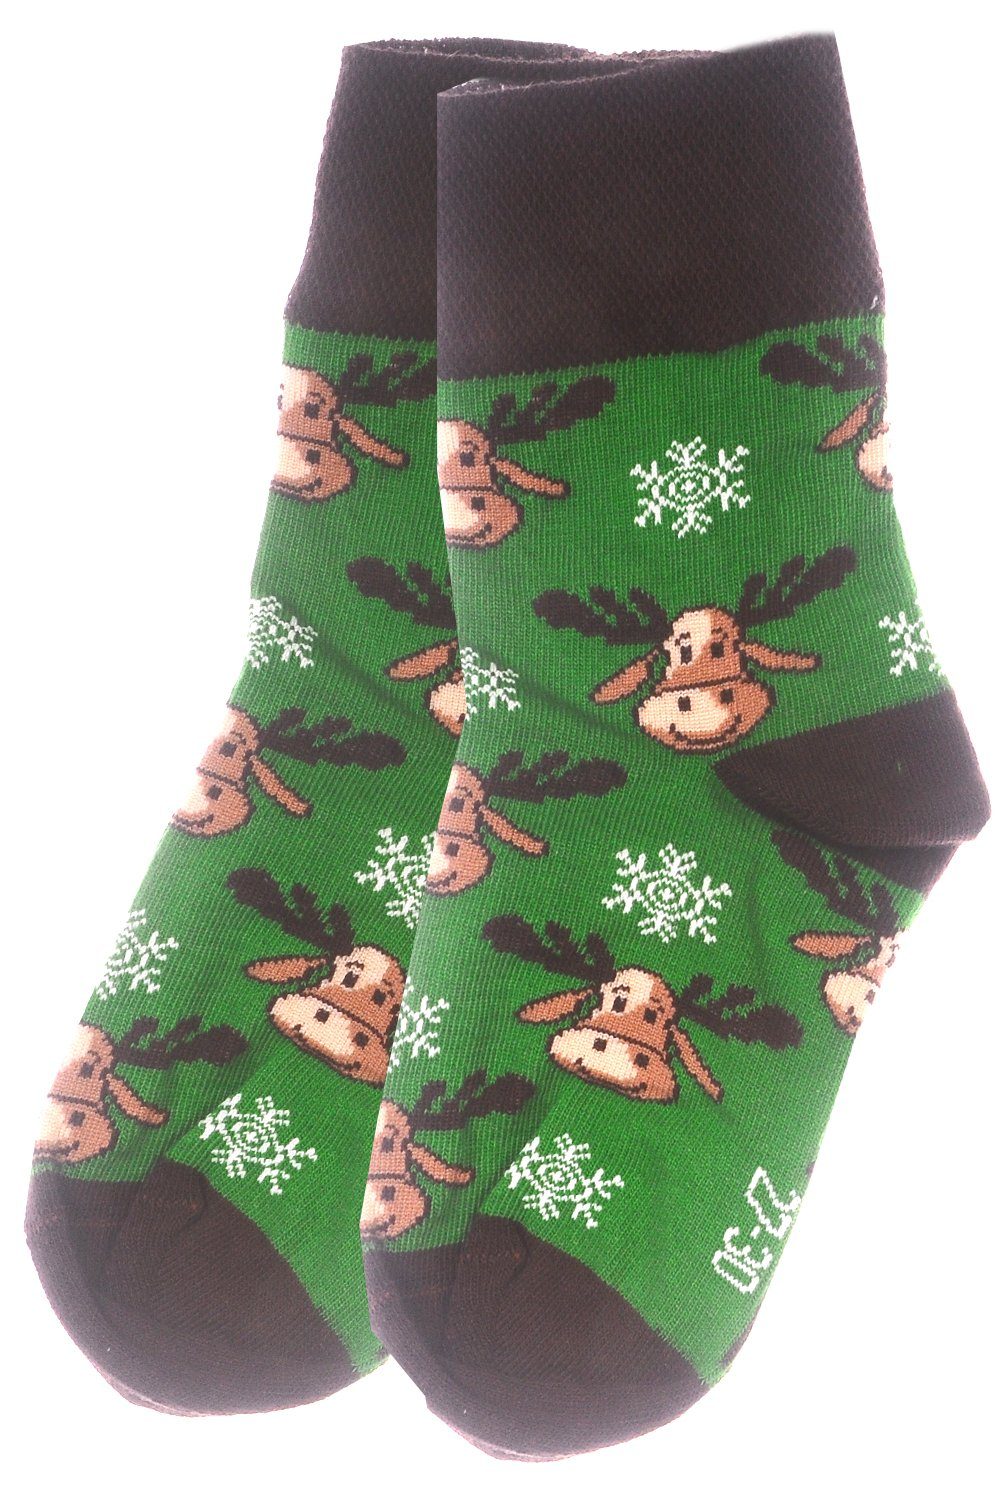 Martinex Socken 1 Paar Socken Strümpfe 27 31 35 38 39 42 43 46 Weihnachtssocken für die ganze Familie